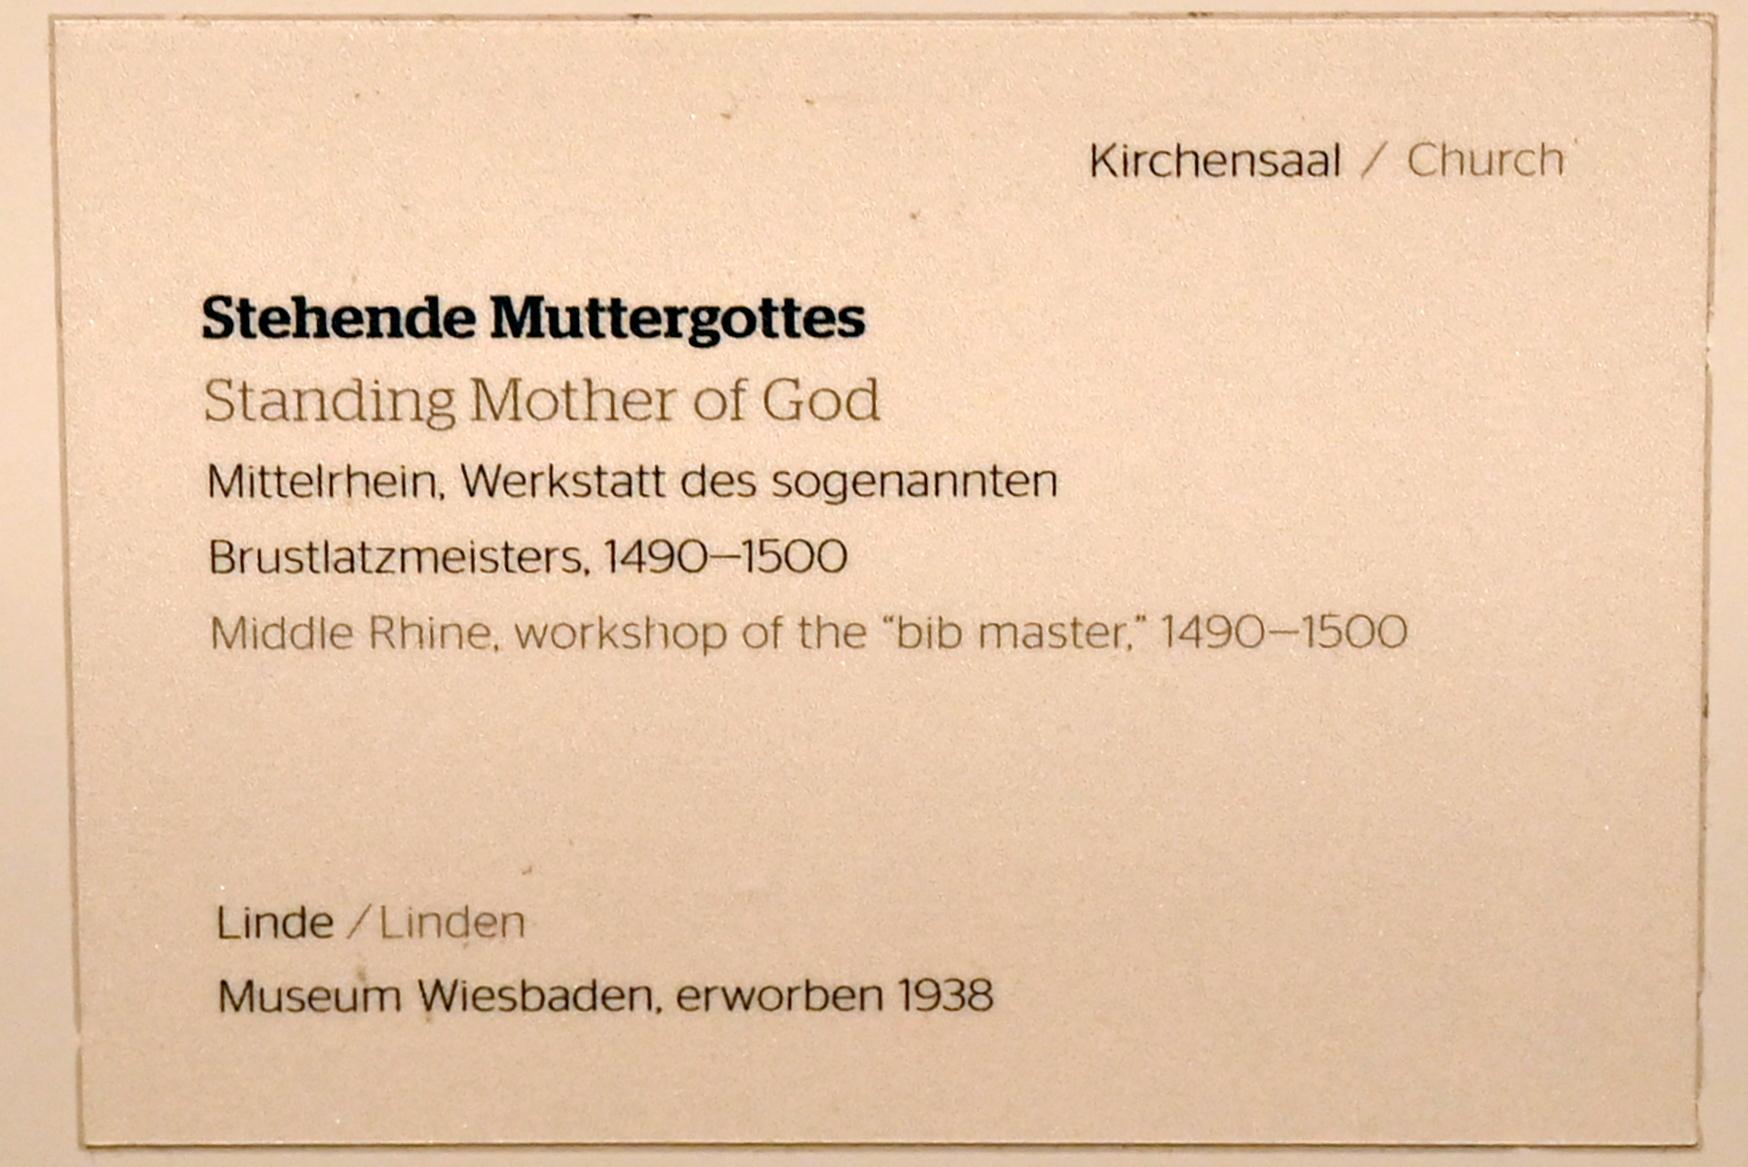 Meister mit dem Brustlatz (Werkstatt) (1495), Stehende Muttergottes, Wiesbaden, Museum Wiesbaden, Kirchensaal, 1490–1500, Bild 4/4